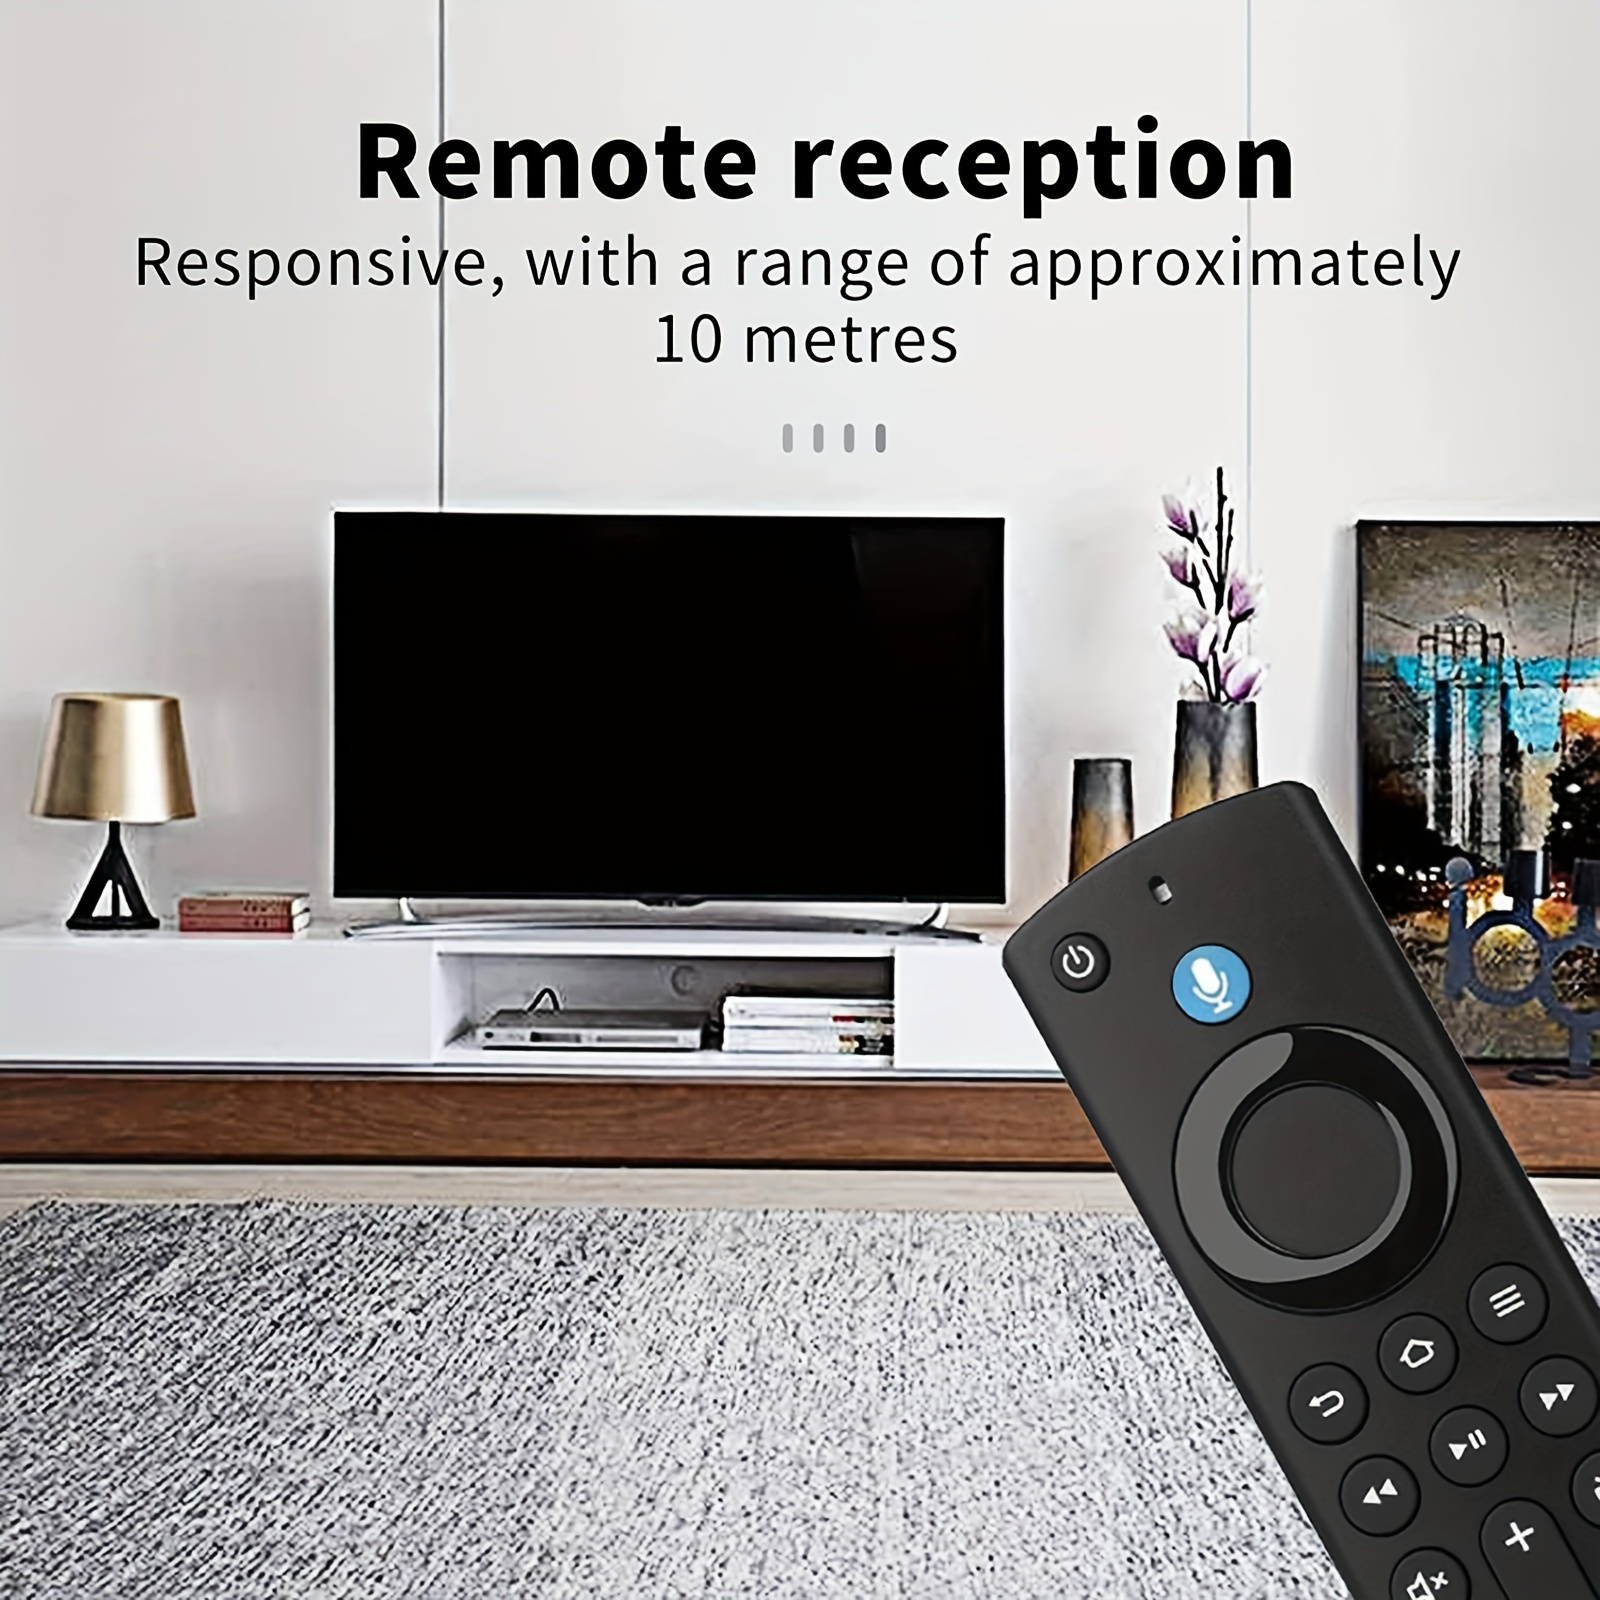 Mando a distancia Universal para TV Digital/DVD/AUX, repuesto de mando a  distancia, accesorios de vídeo para el hogar para Philips DVD/AUX -  AliExpress